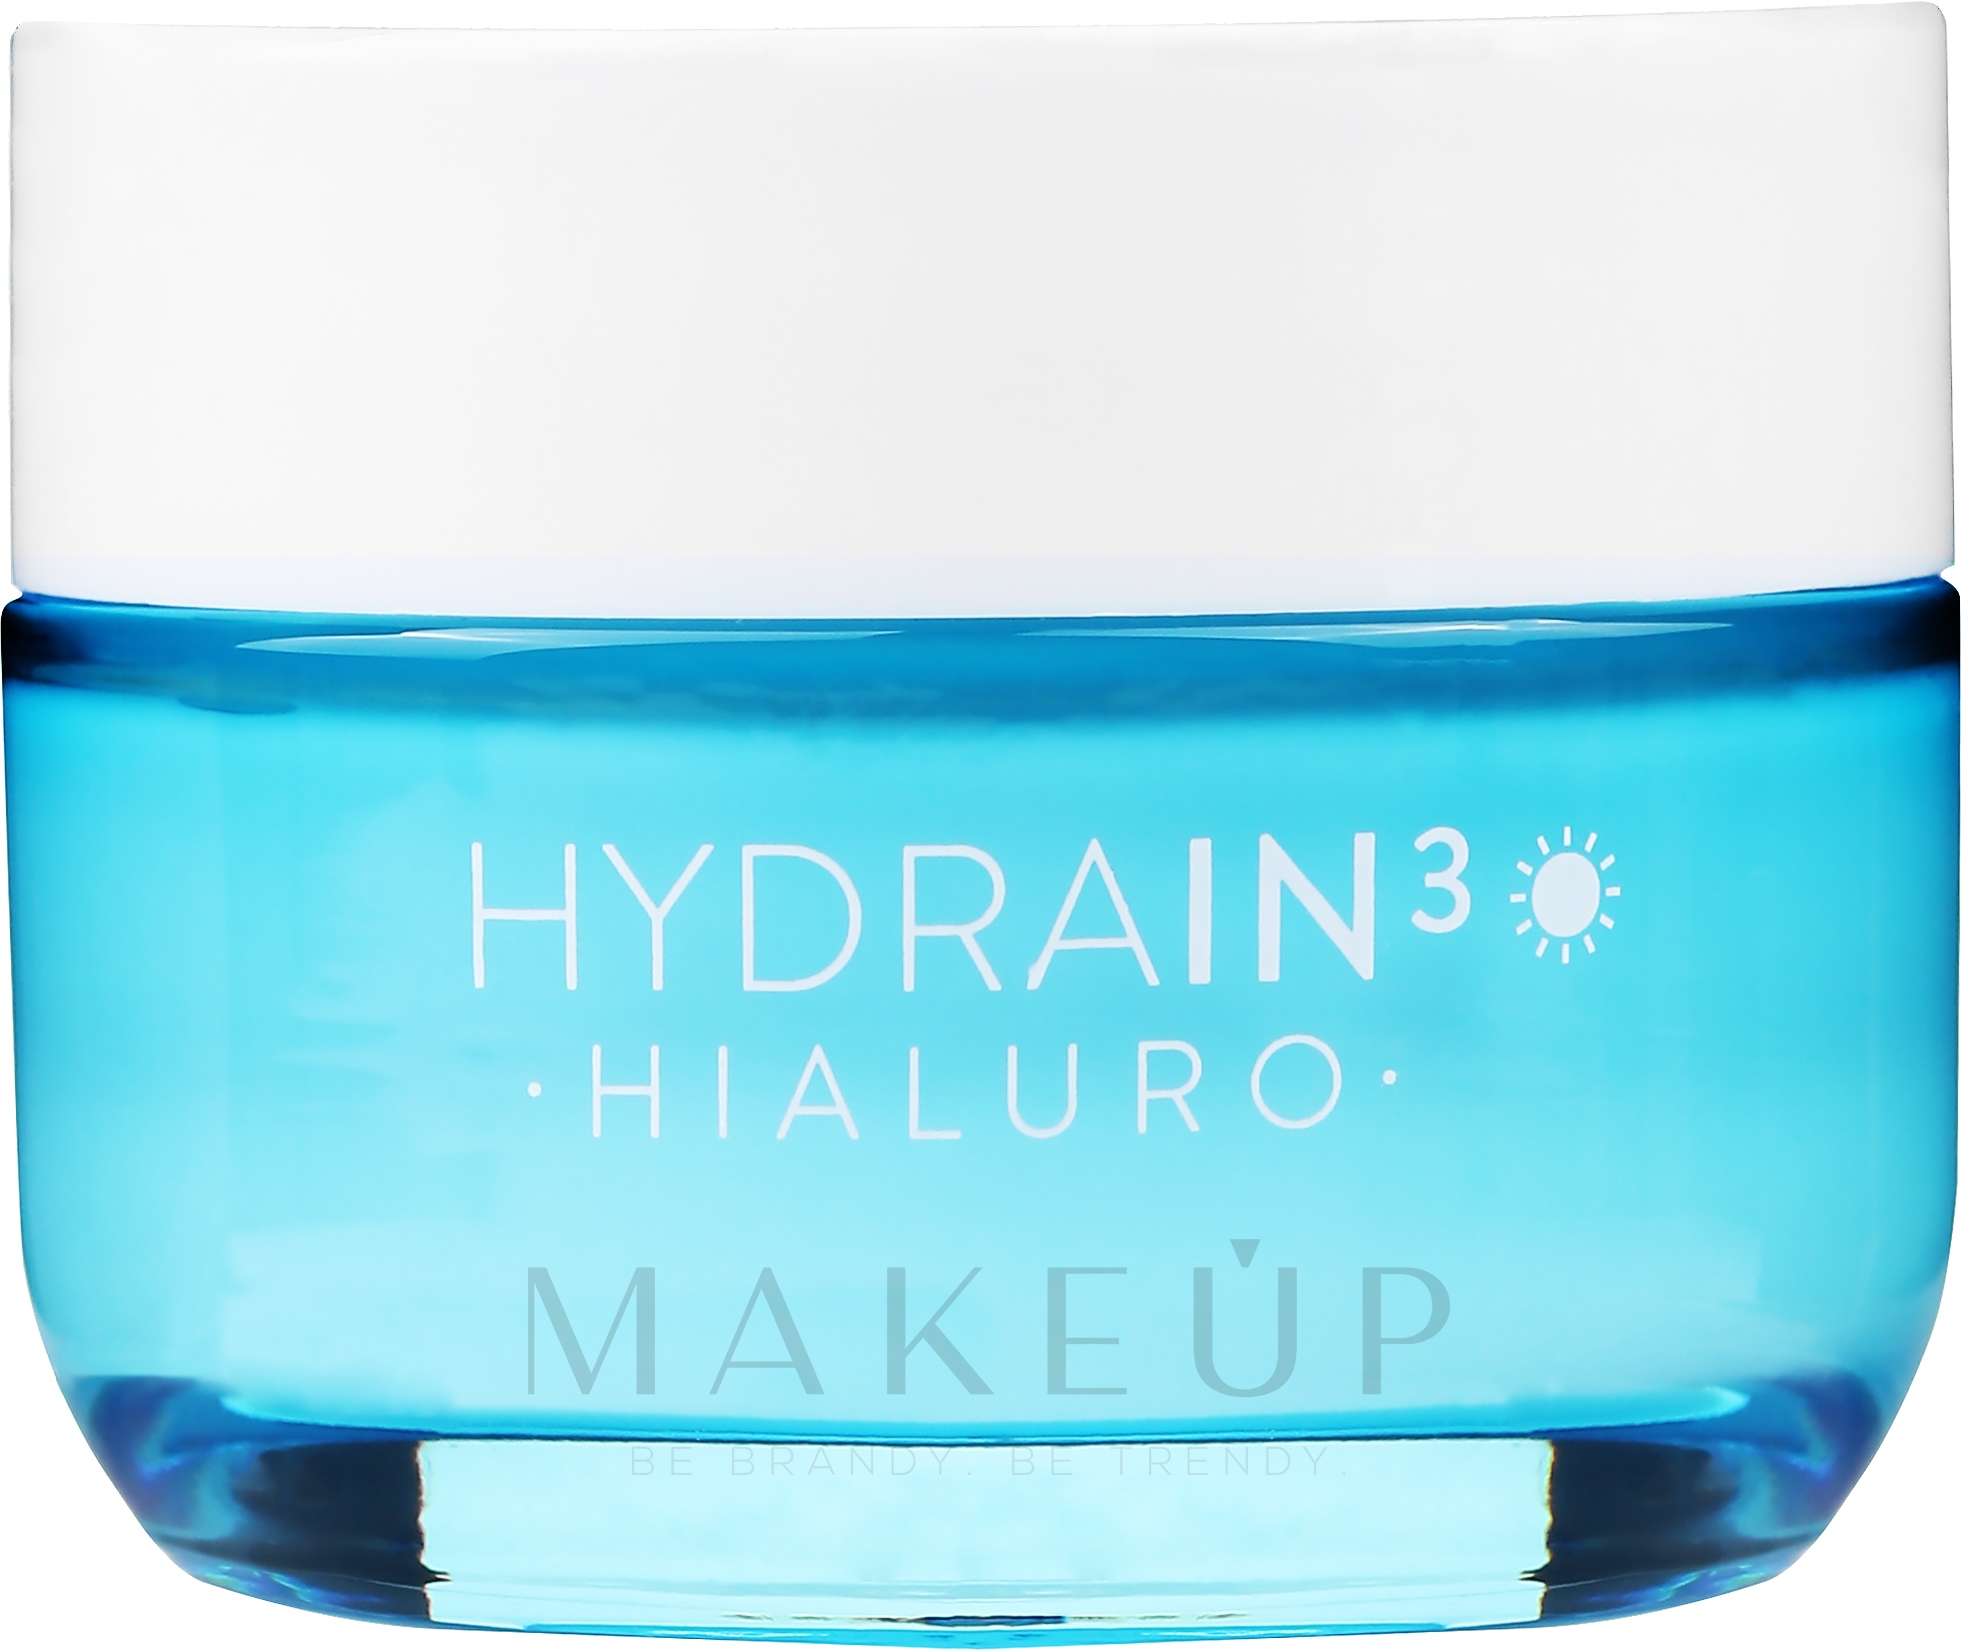 Feuchtigkeitsspendende Gesichtscreme SPF 15 - Dermedic Hydrain3 Hialuro Deeply Moisturizing Cream SPF 15 — Foto 50 g